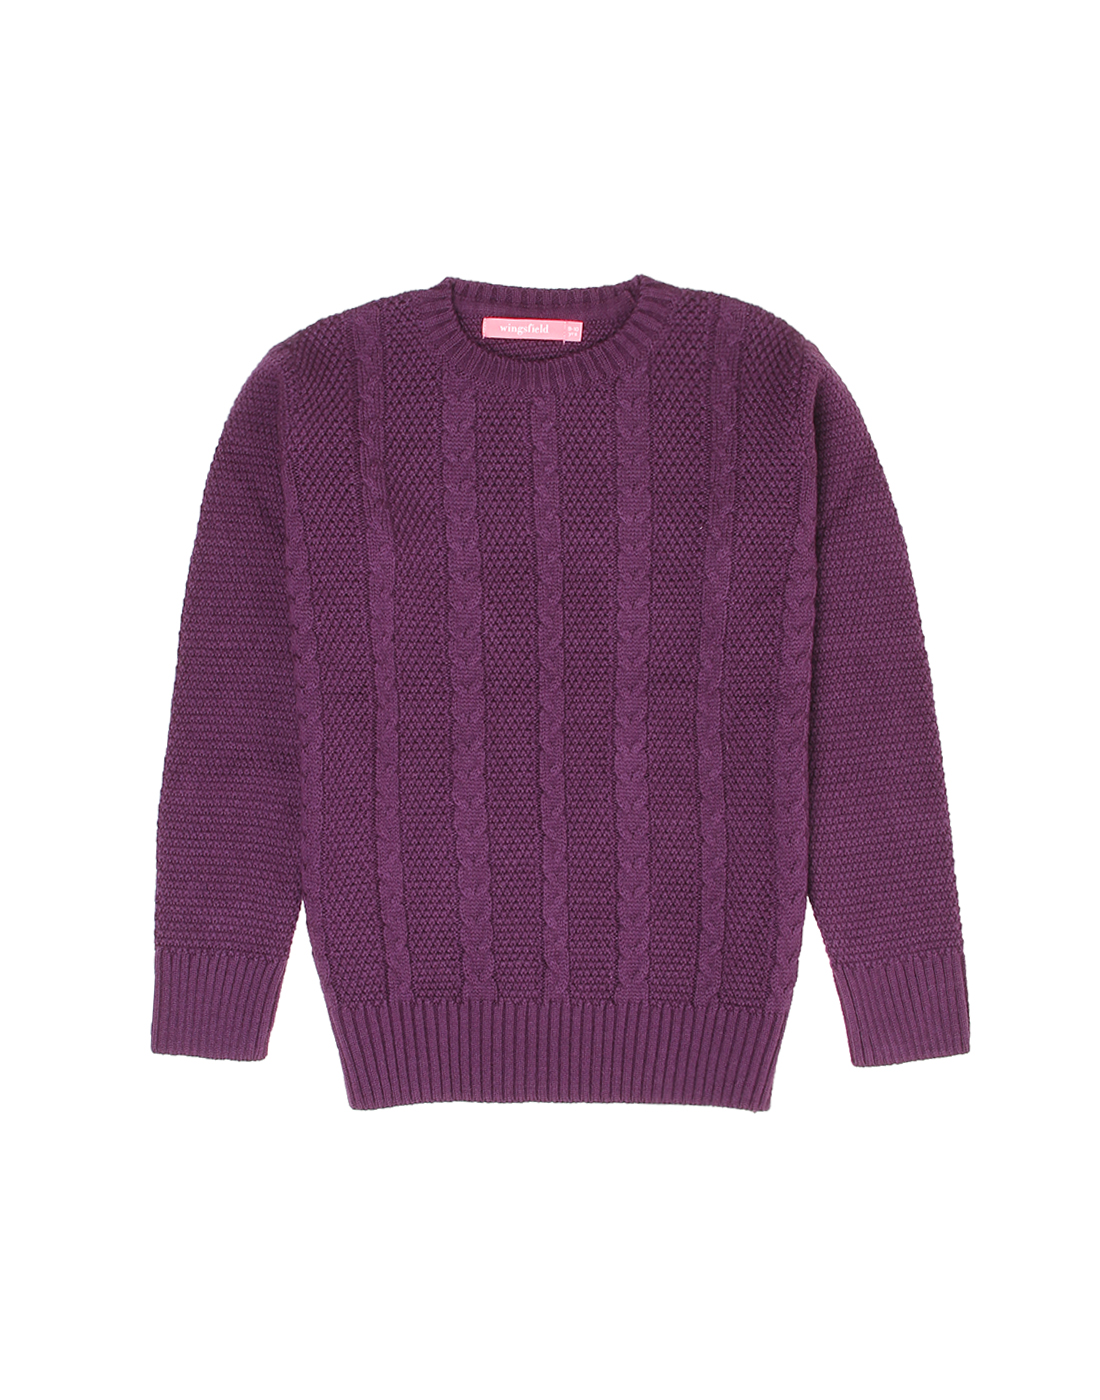 Wingsfield Girls Purple Sweater